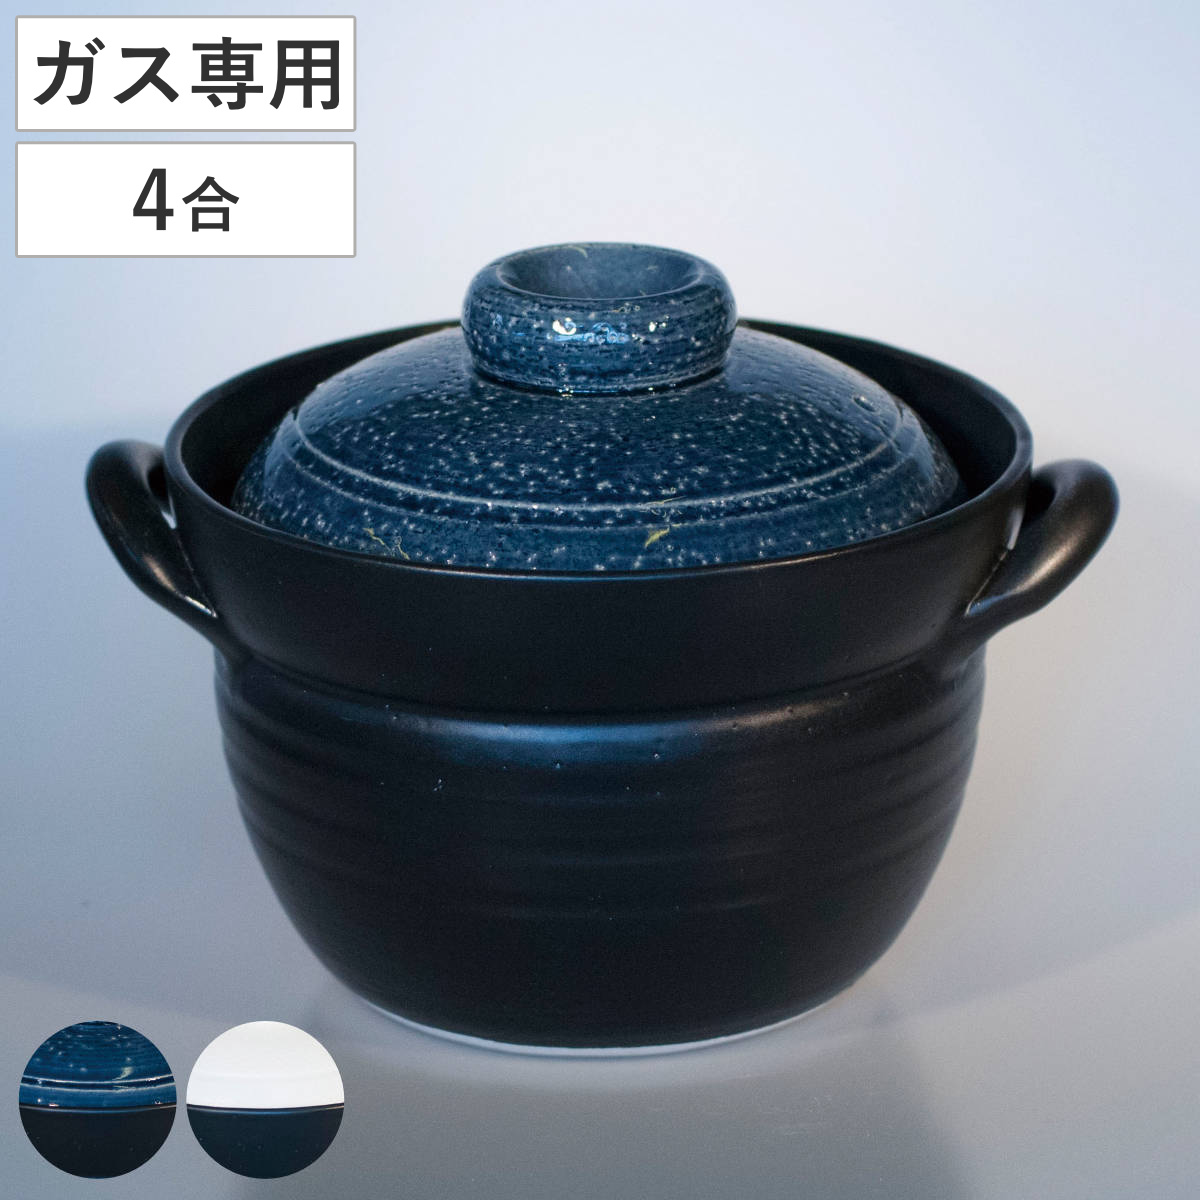 炊飯土鍋 2合炊 直火専用 ふっくらごはん鍋 二重蓋 萬古焼 日本製 